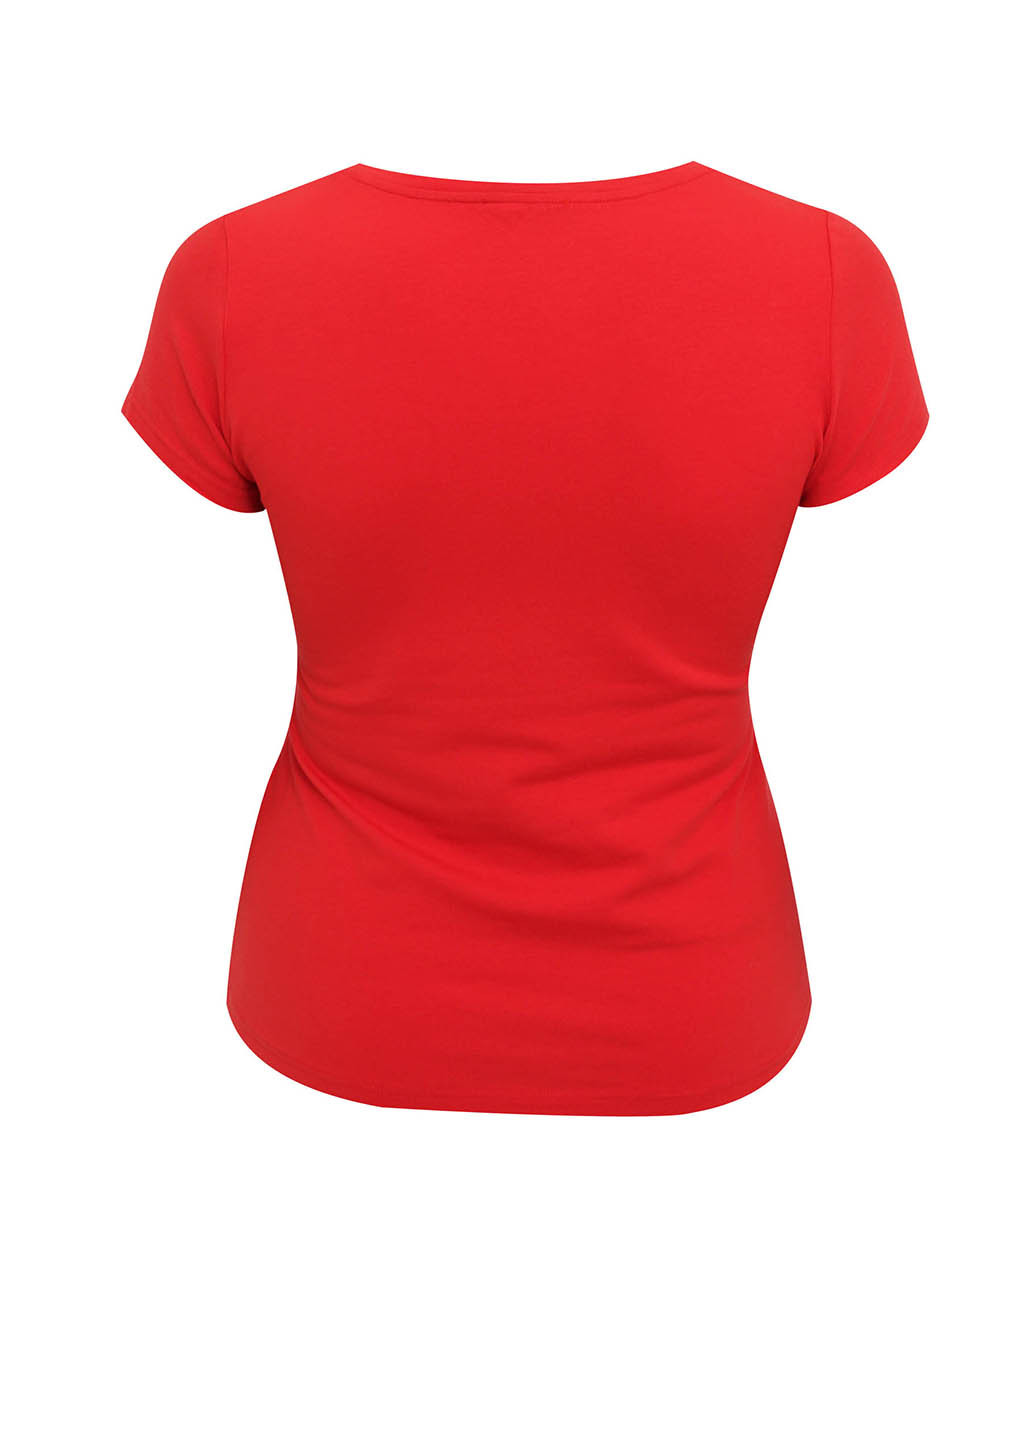 Червона літня футболка Oodji